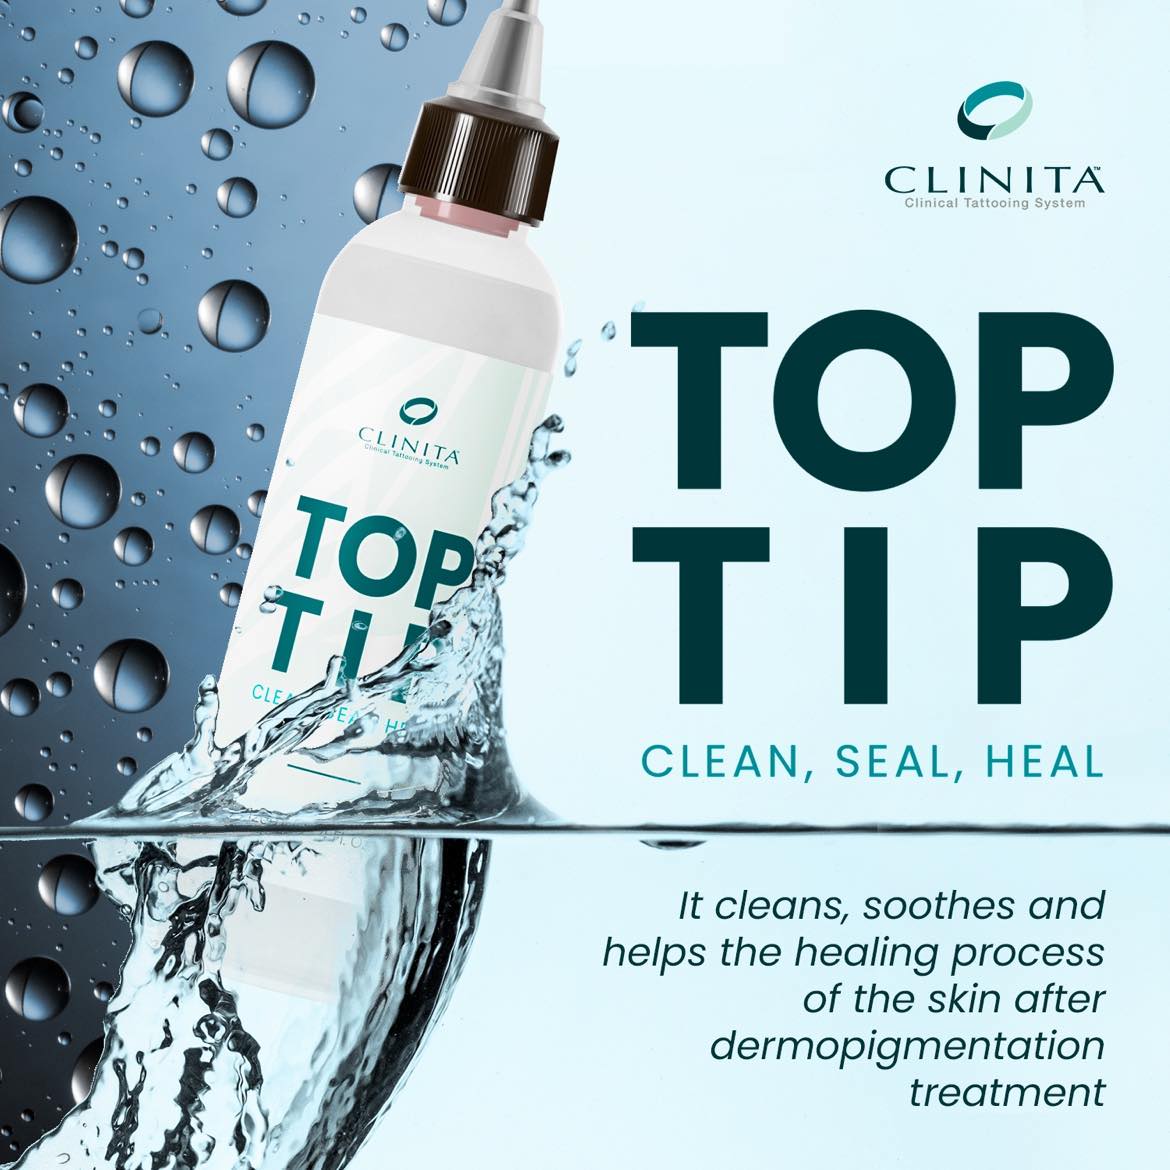 Clinita Top Tip – Clean, Seal, Heal